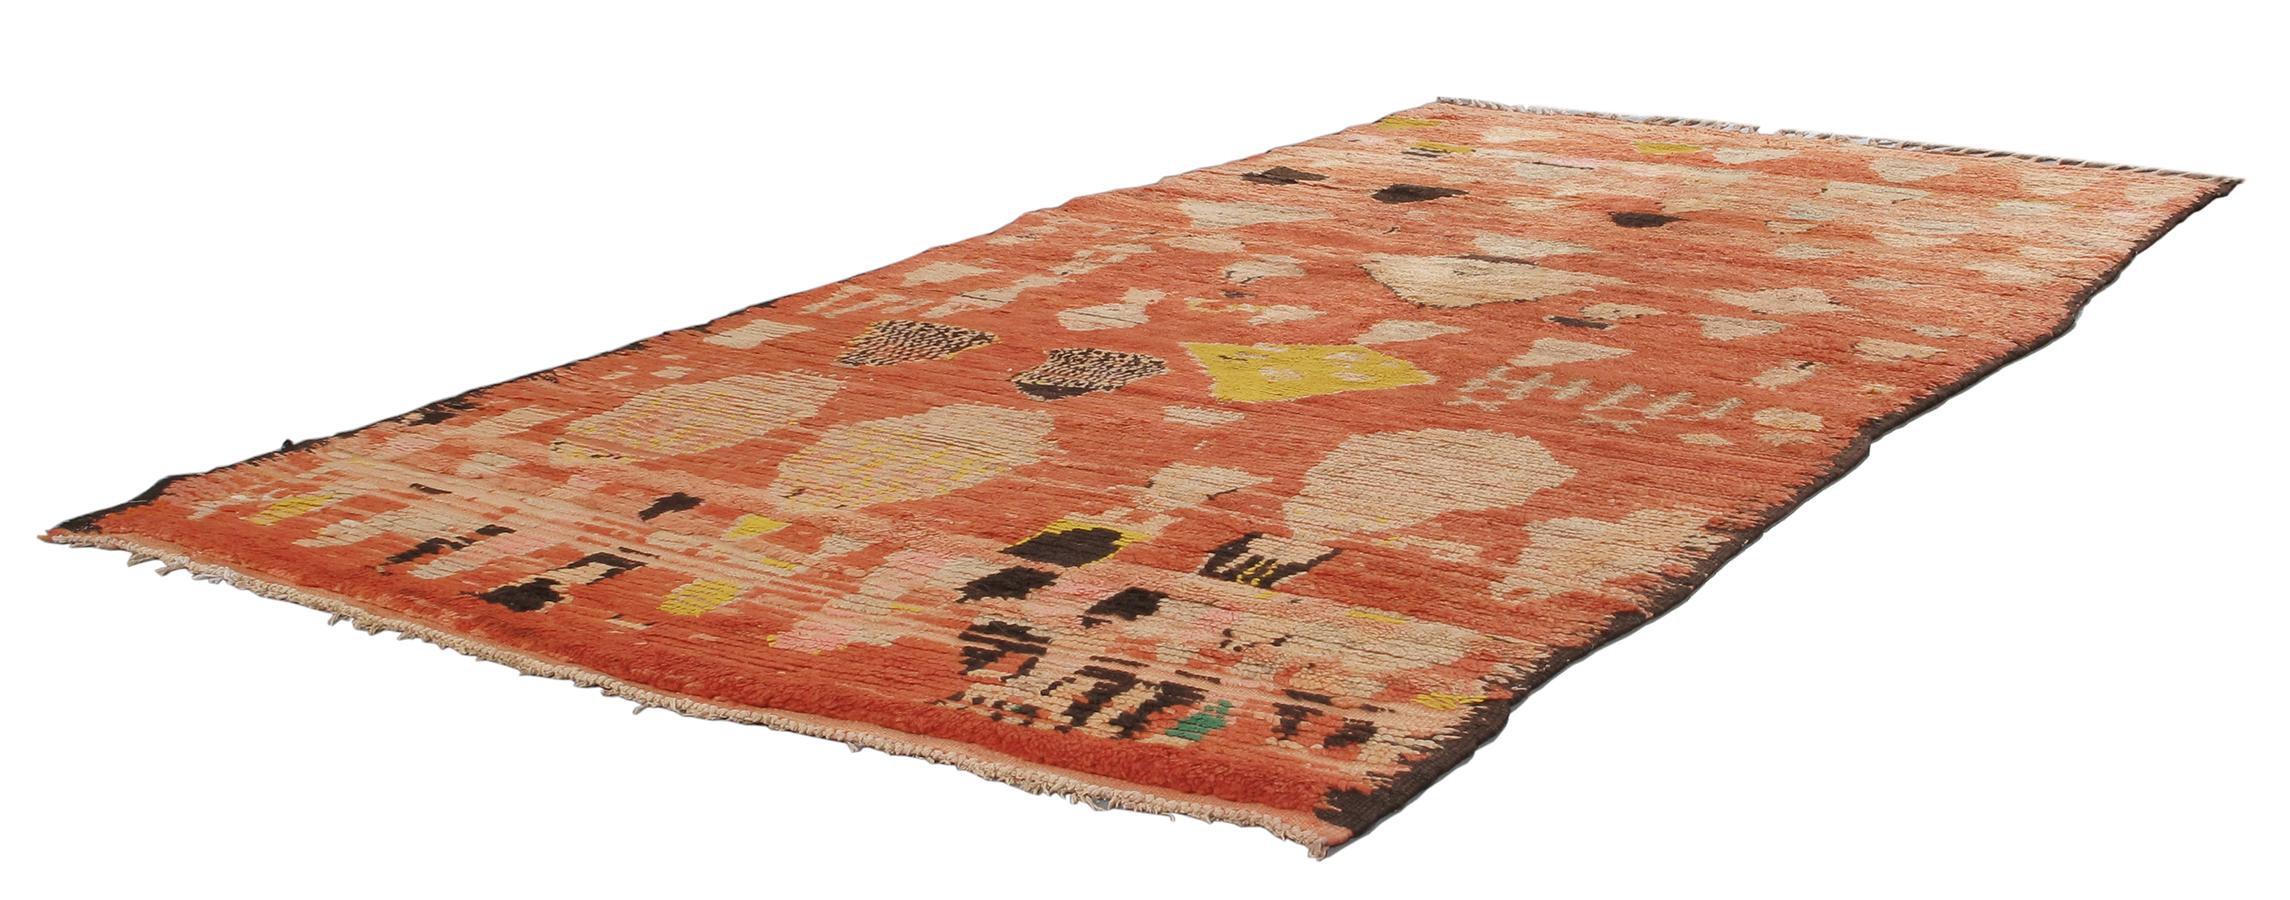 Unsere marokkanischen Vintage-Teppiche sind Teil einer sorgfältig zusammengestellten Sammlung seltener und ungewöhnlicher Designs. Sie werden aus natürlichen Farbstoffen und 100 % handgesponnener Wolle aus dem Atlasgebirge in Nordafrika hergestellt.